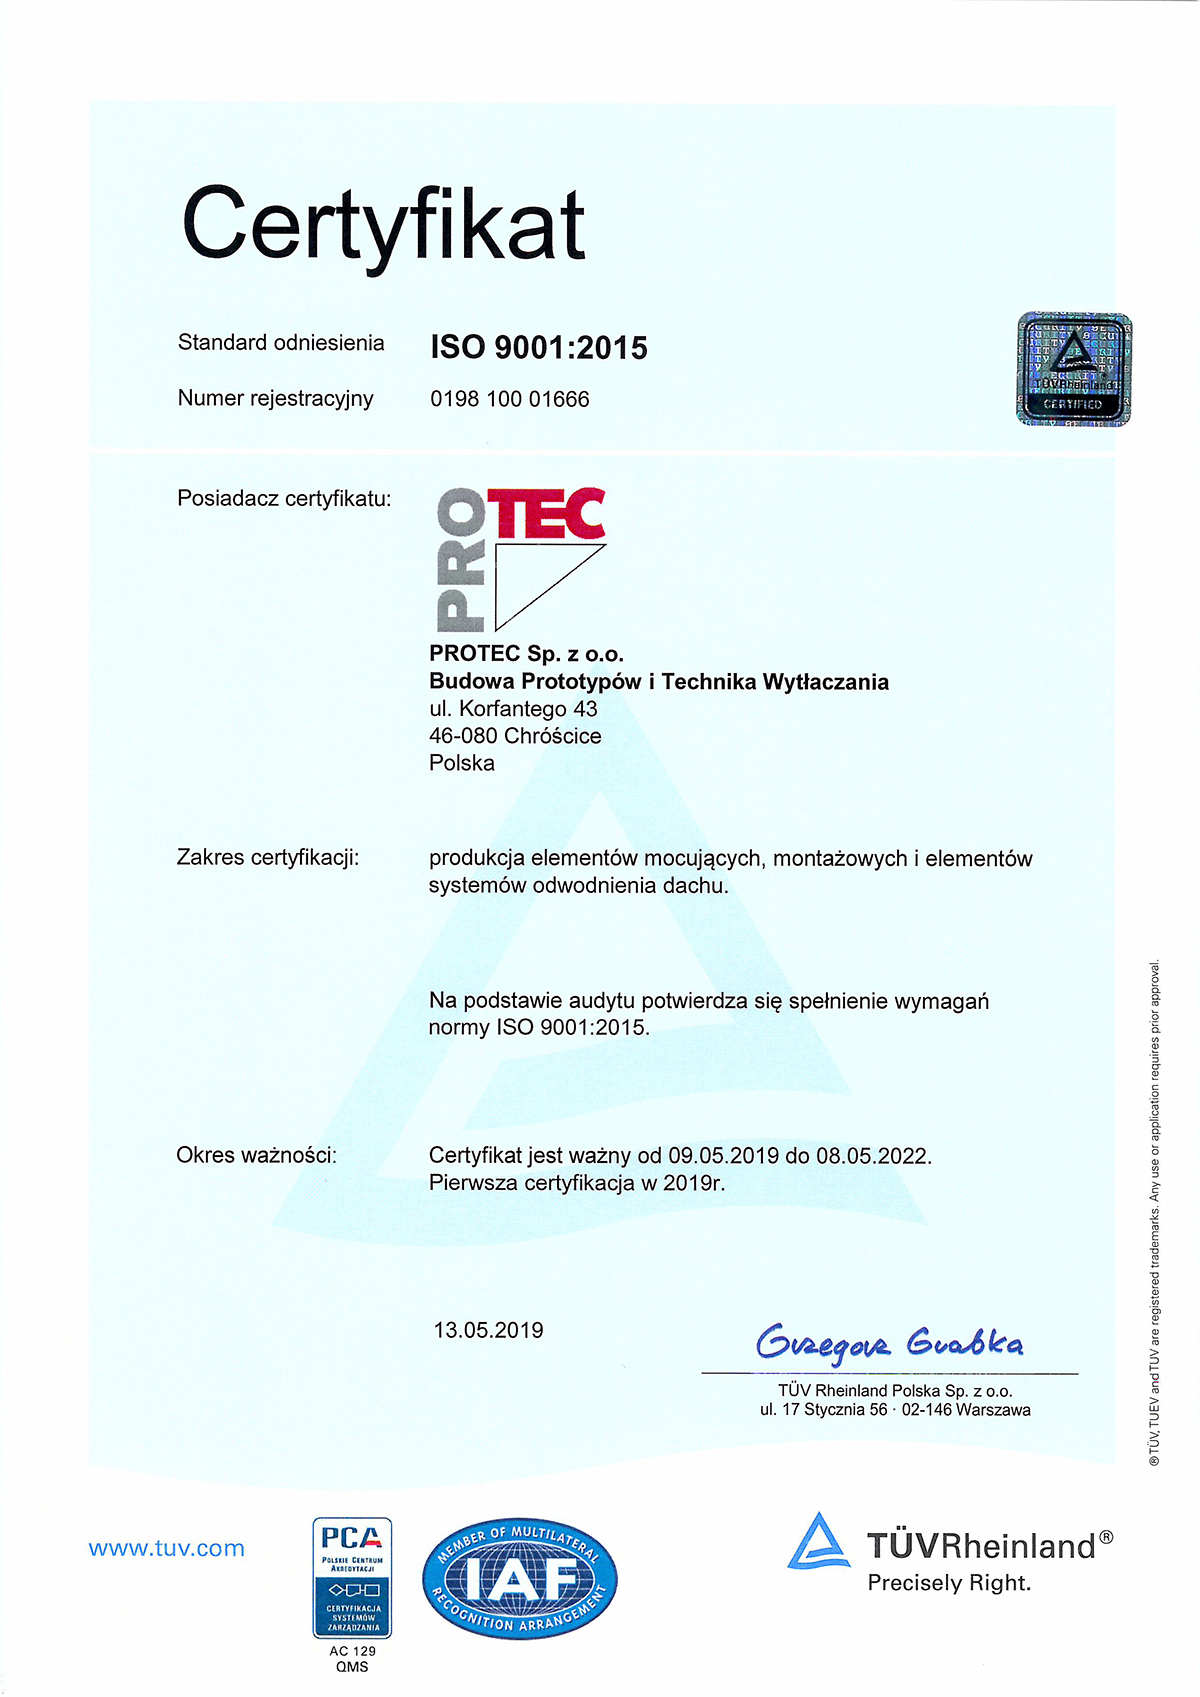 Certyfikat TÜV Rheinland dla PROTEC Sp. z o.o.